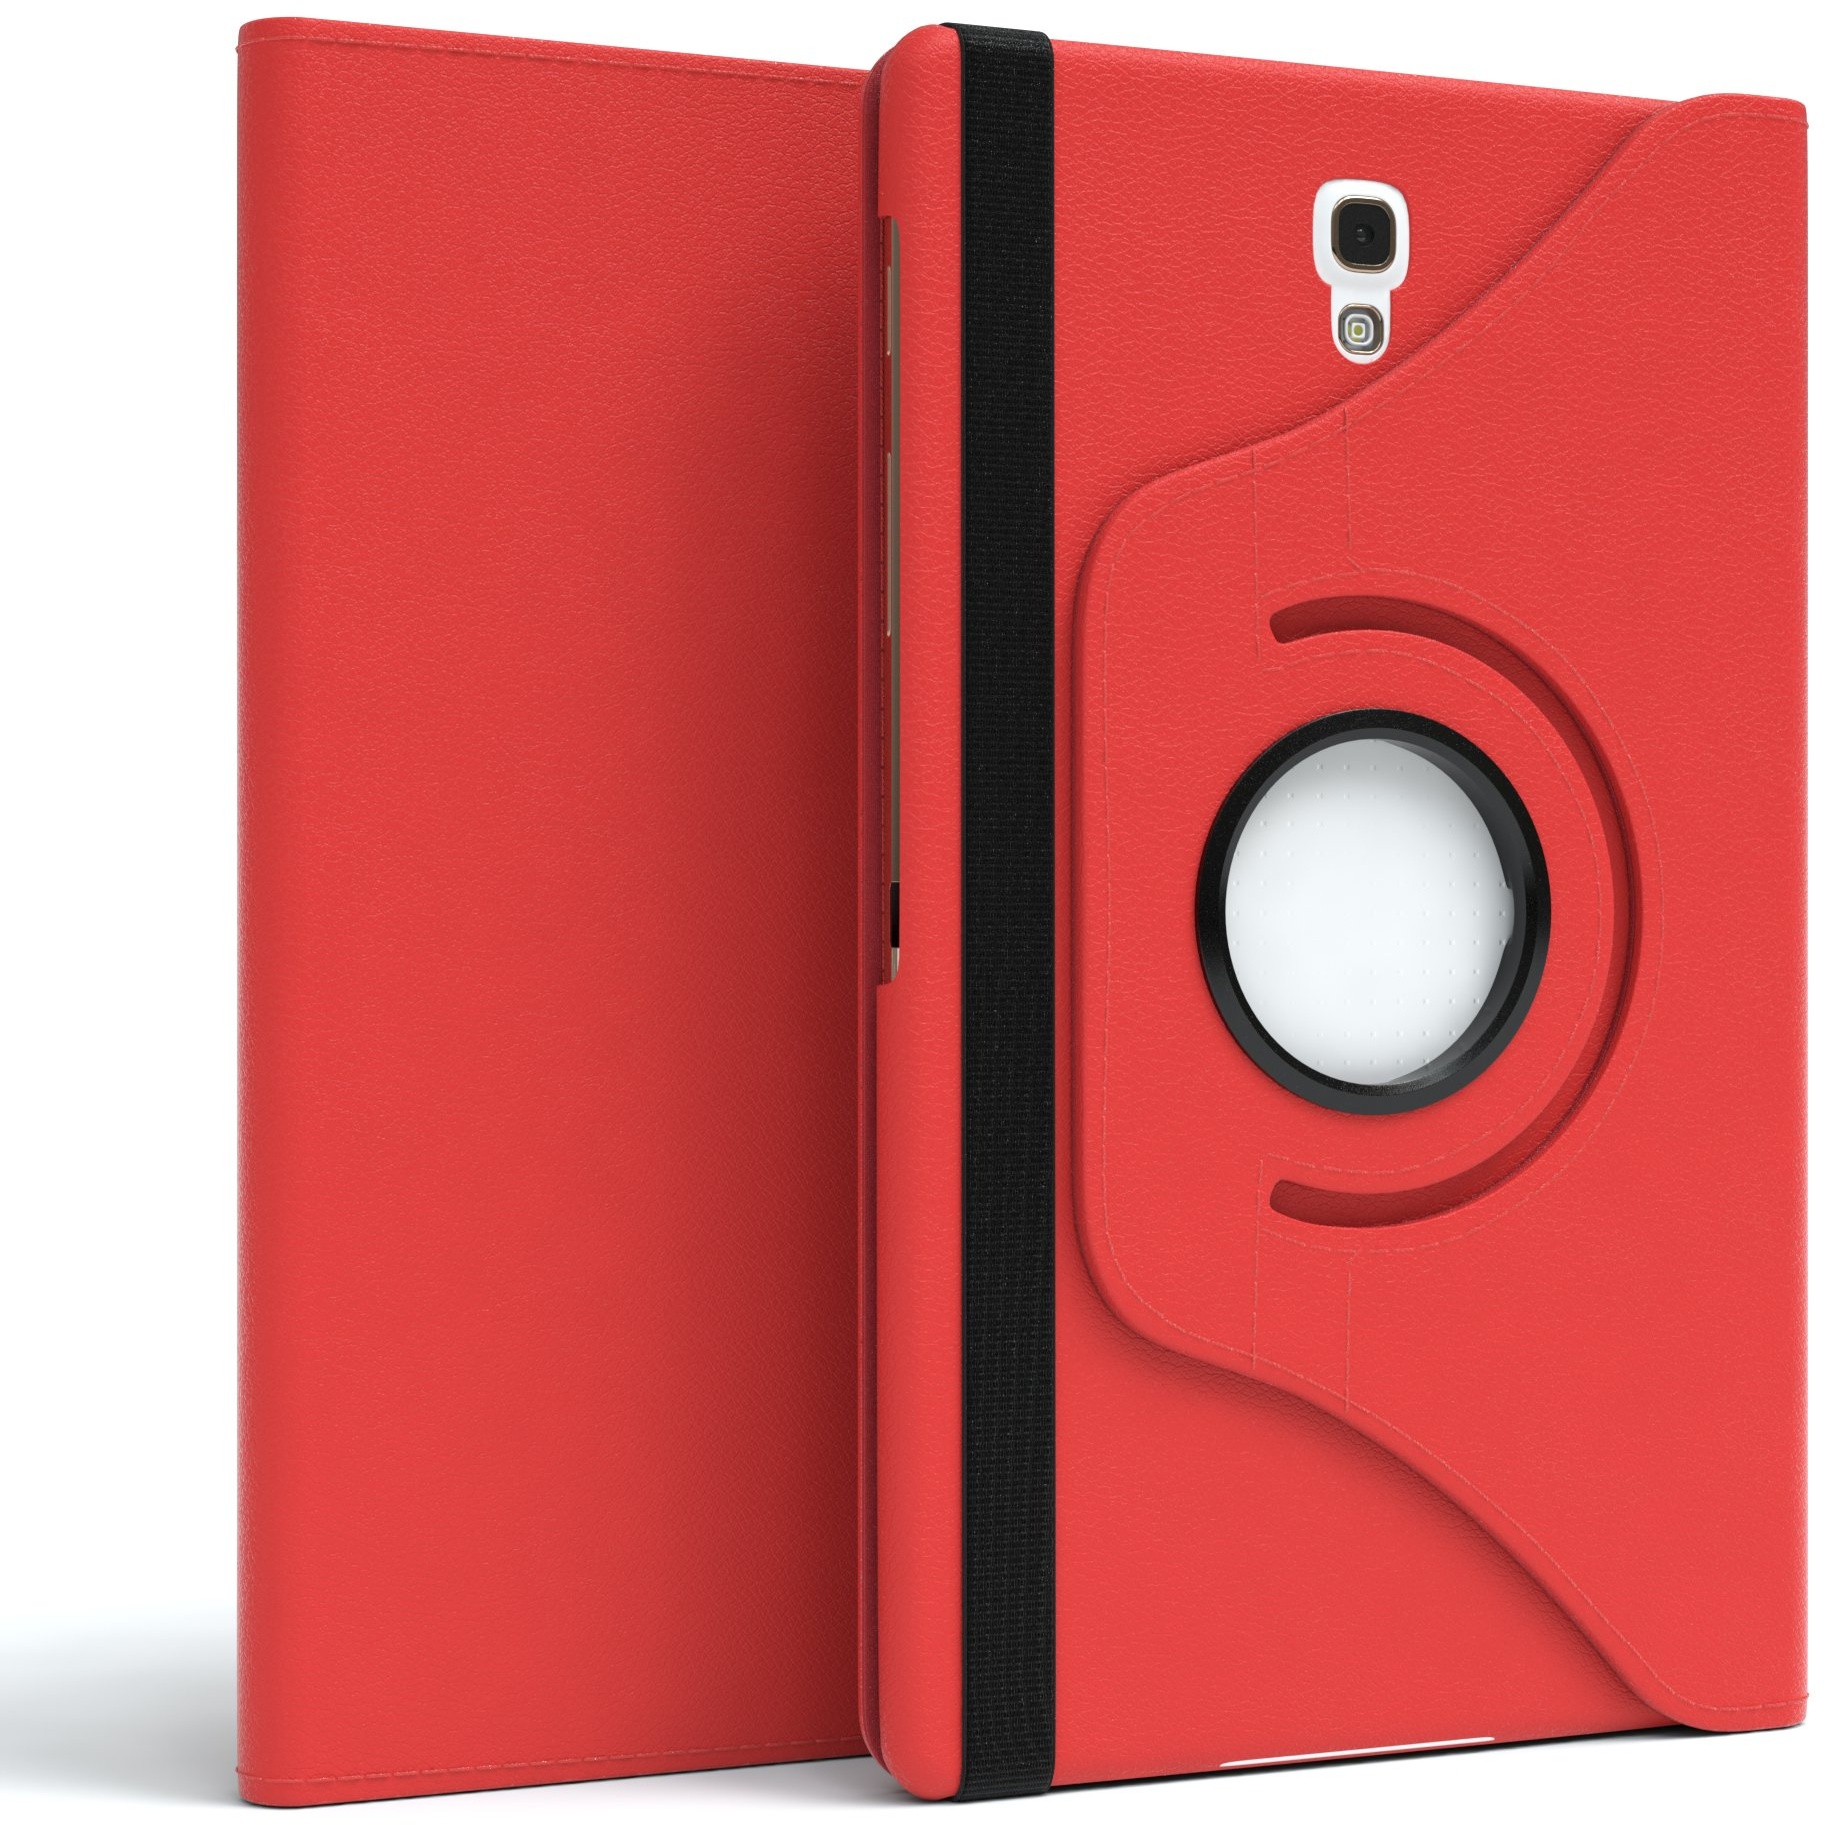 EAZY CASE - Tablet Hülle für Samsung Galaxy Tab 3 8.0" Schutzhülle 8 Zoll Smart Cover Tablet Case Rotationcase zum Aufstellen Klapphülle 360° drehbar mit Standfunktion Tasche Kunstleder Rot